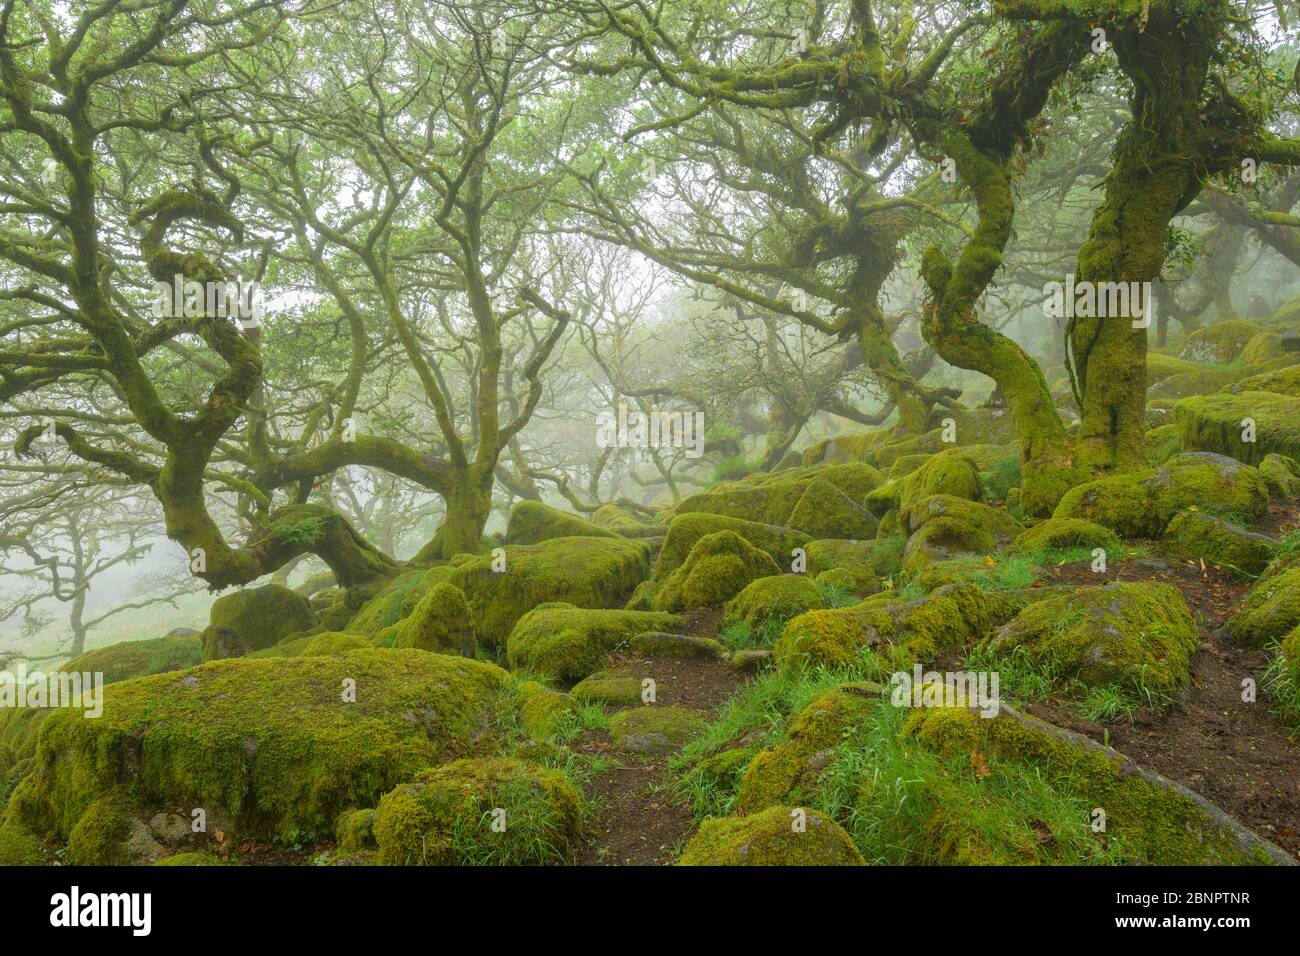 Foresta di querce Spooky con rocce mussose, Wistman's Wood, Dartmoor, Two Bridges, Princetown, Devon, Inghilterra sud-occidentale, Inghilterra, Regno Unito, Europa Foto Stock